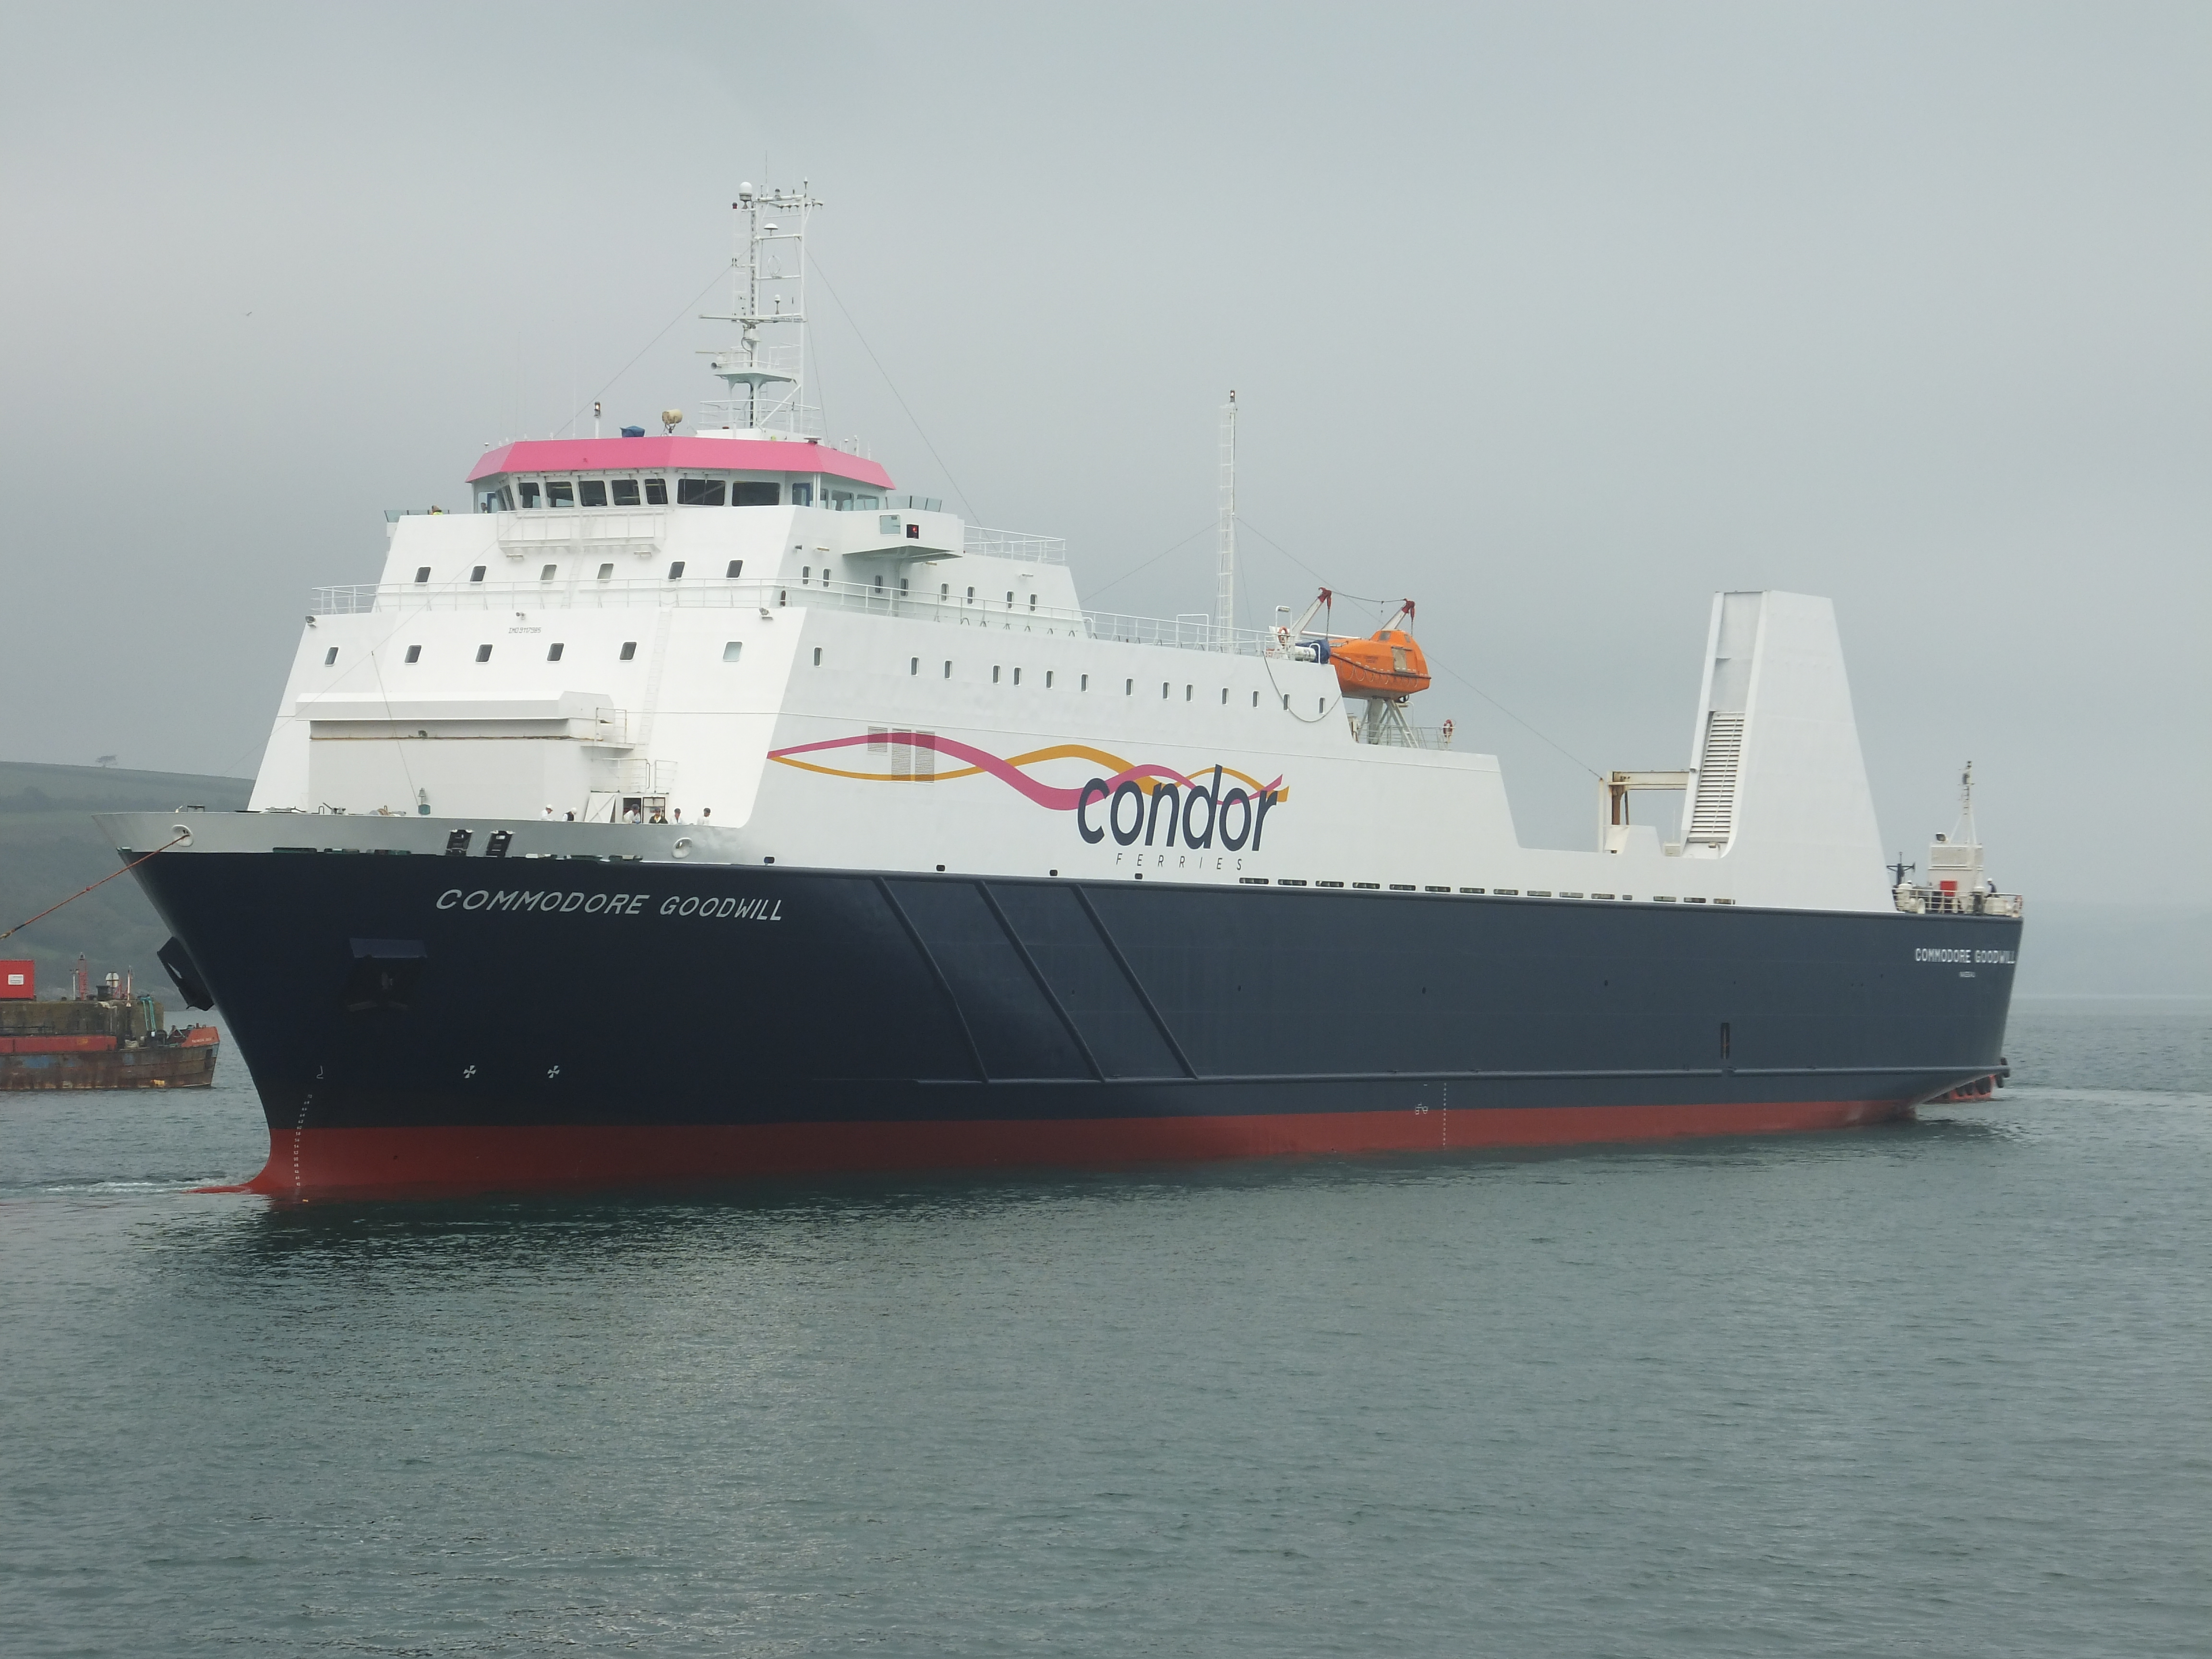 Commodore Goodwill Condor Ferries